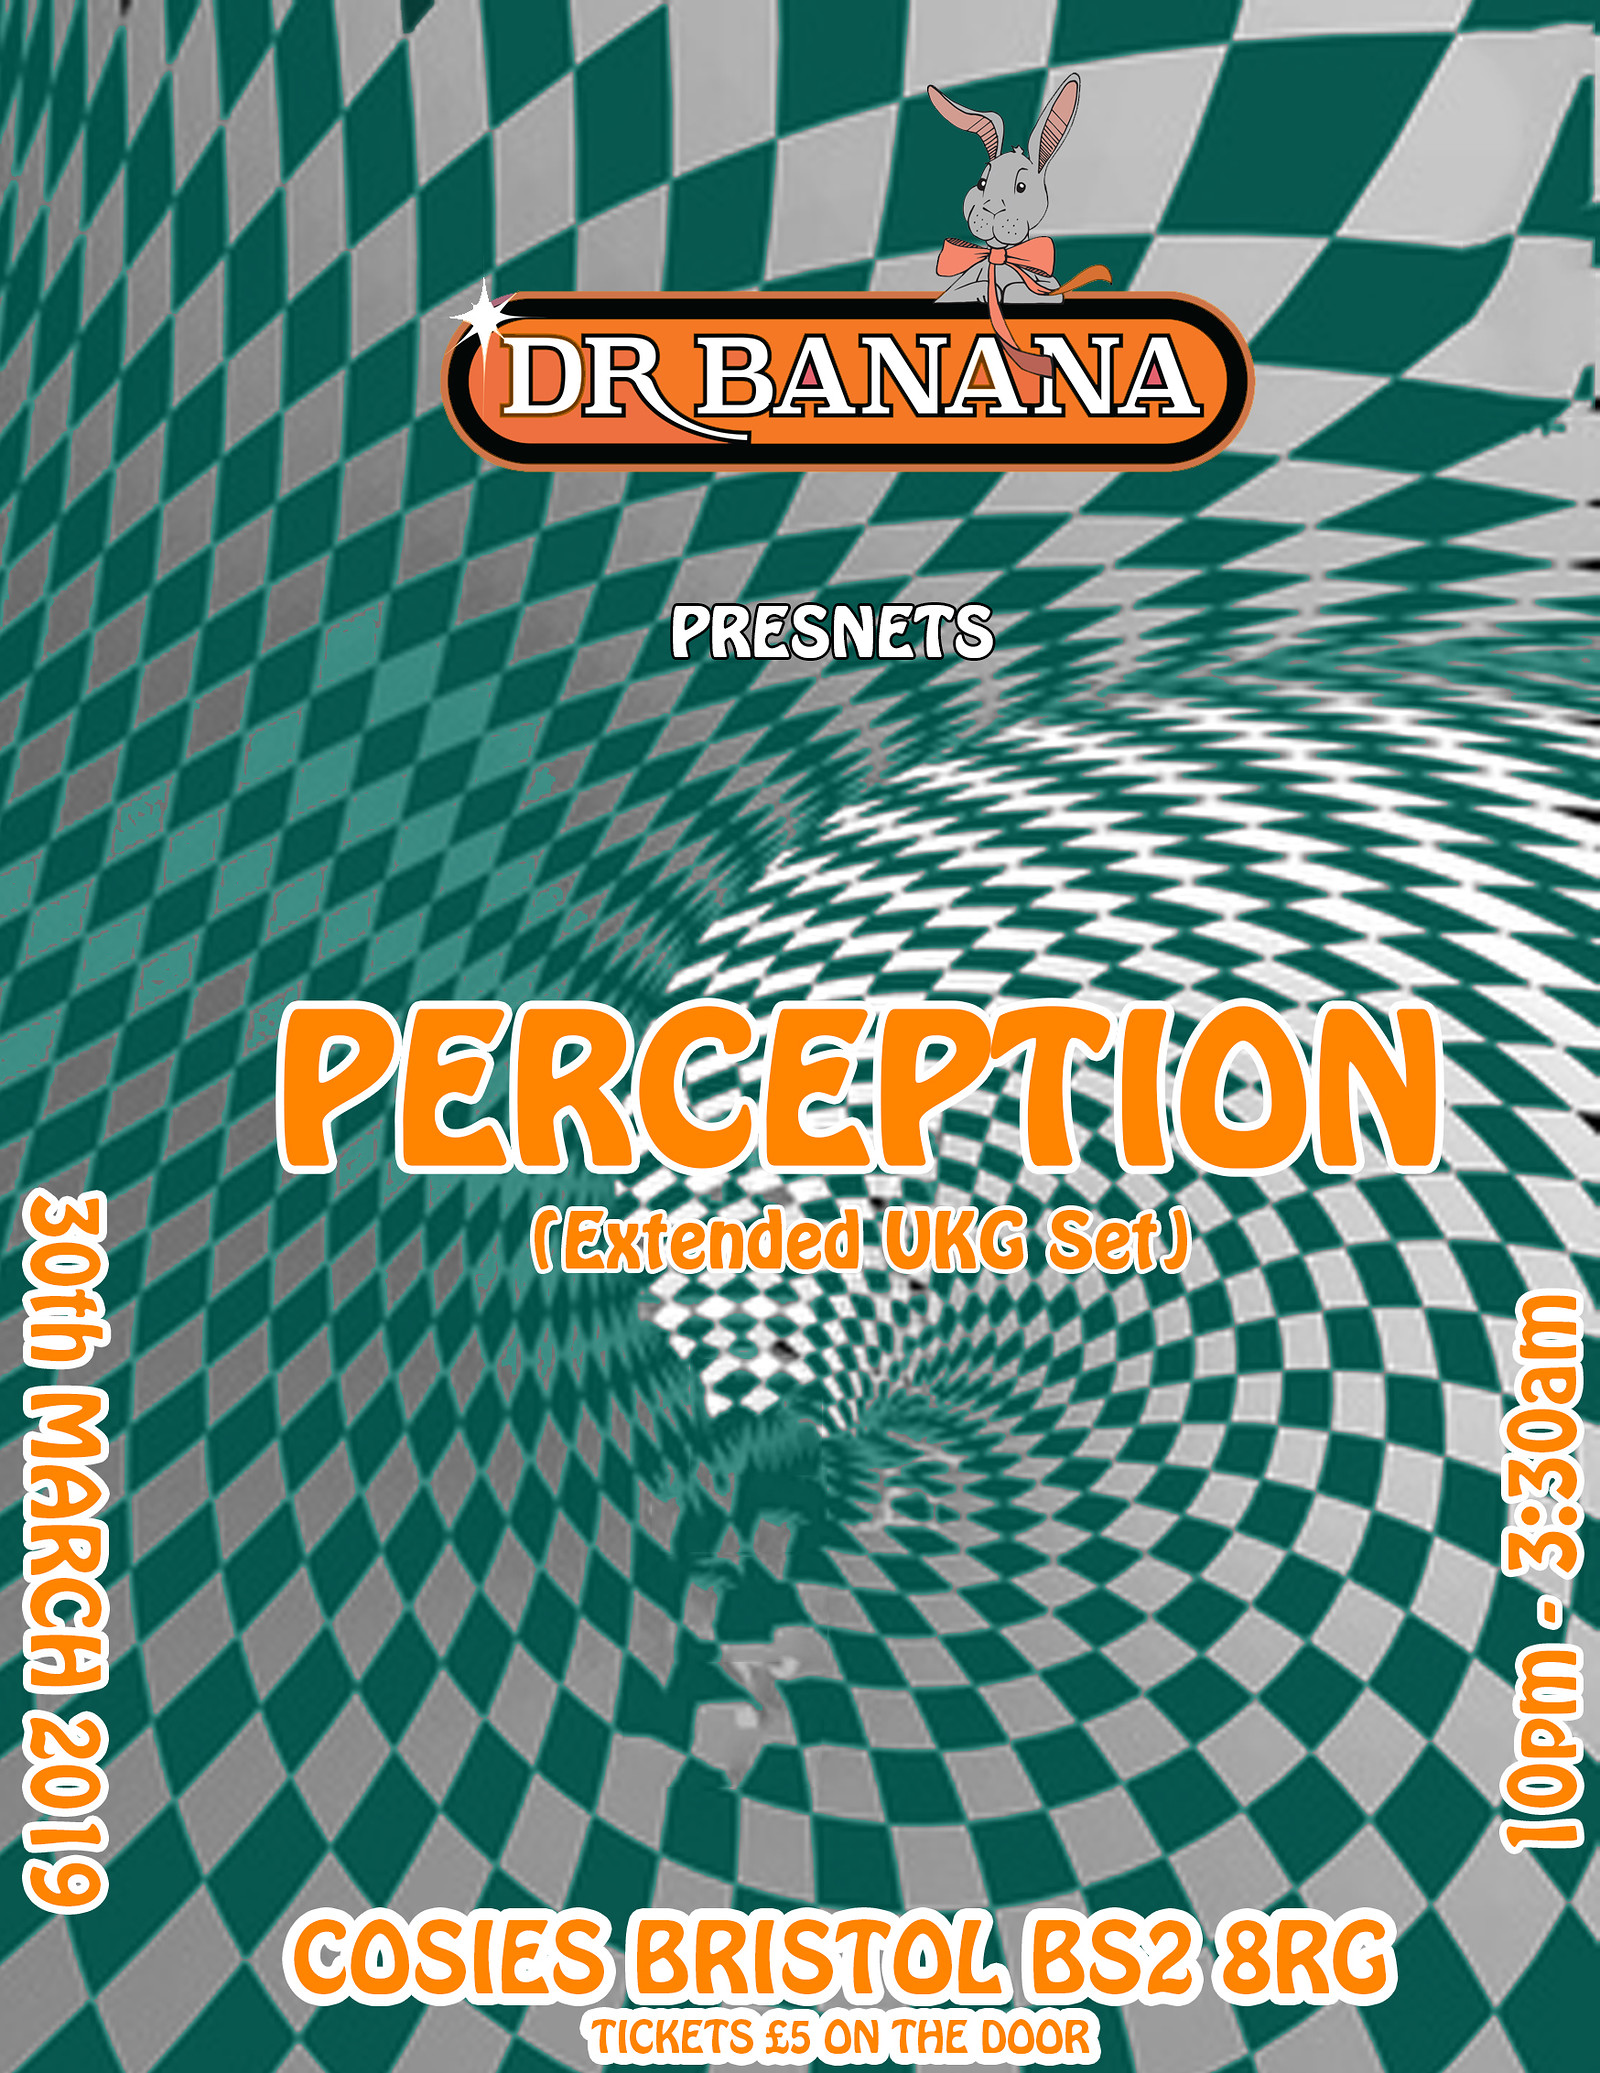 Dr Banana Presents: Perception at Cosies